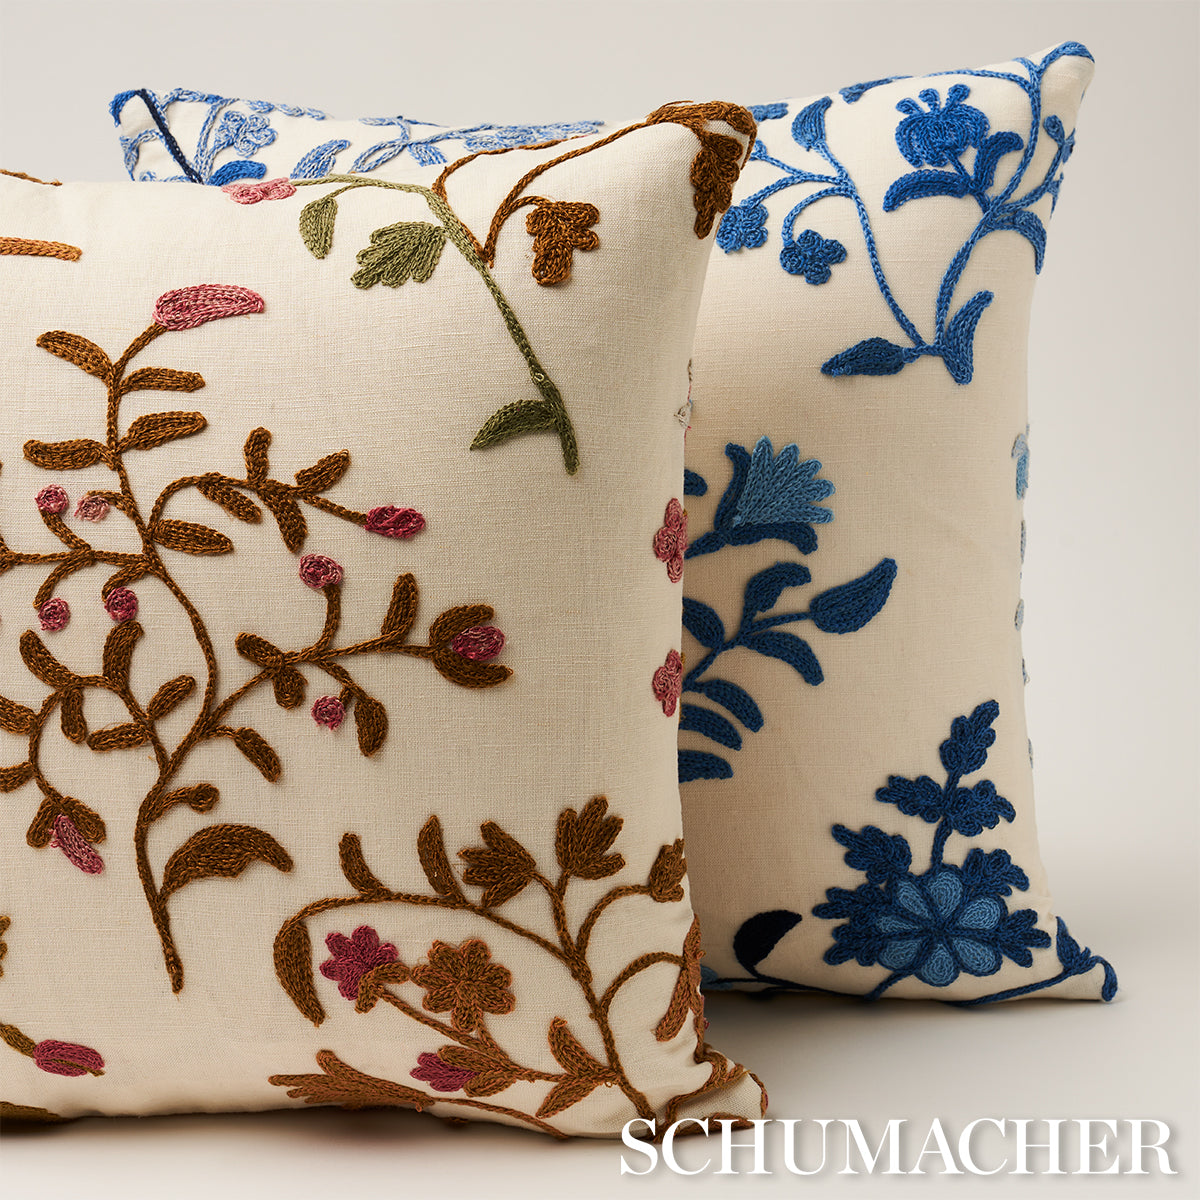 Purchase So814310202 | Raleigh Crewel Embroidery Pillow B, Cornflower - Schumacher Pillows